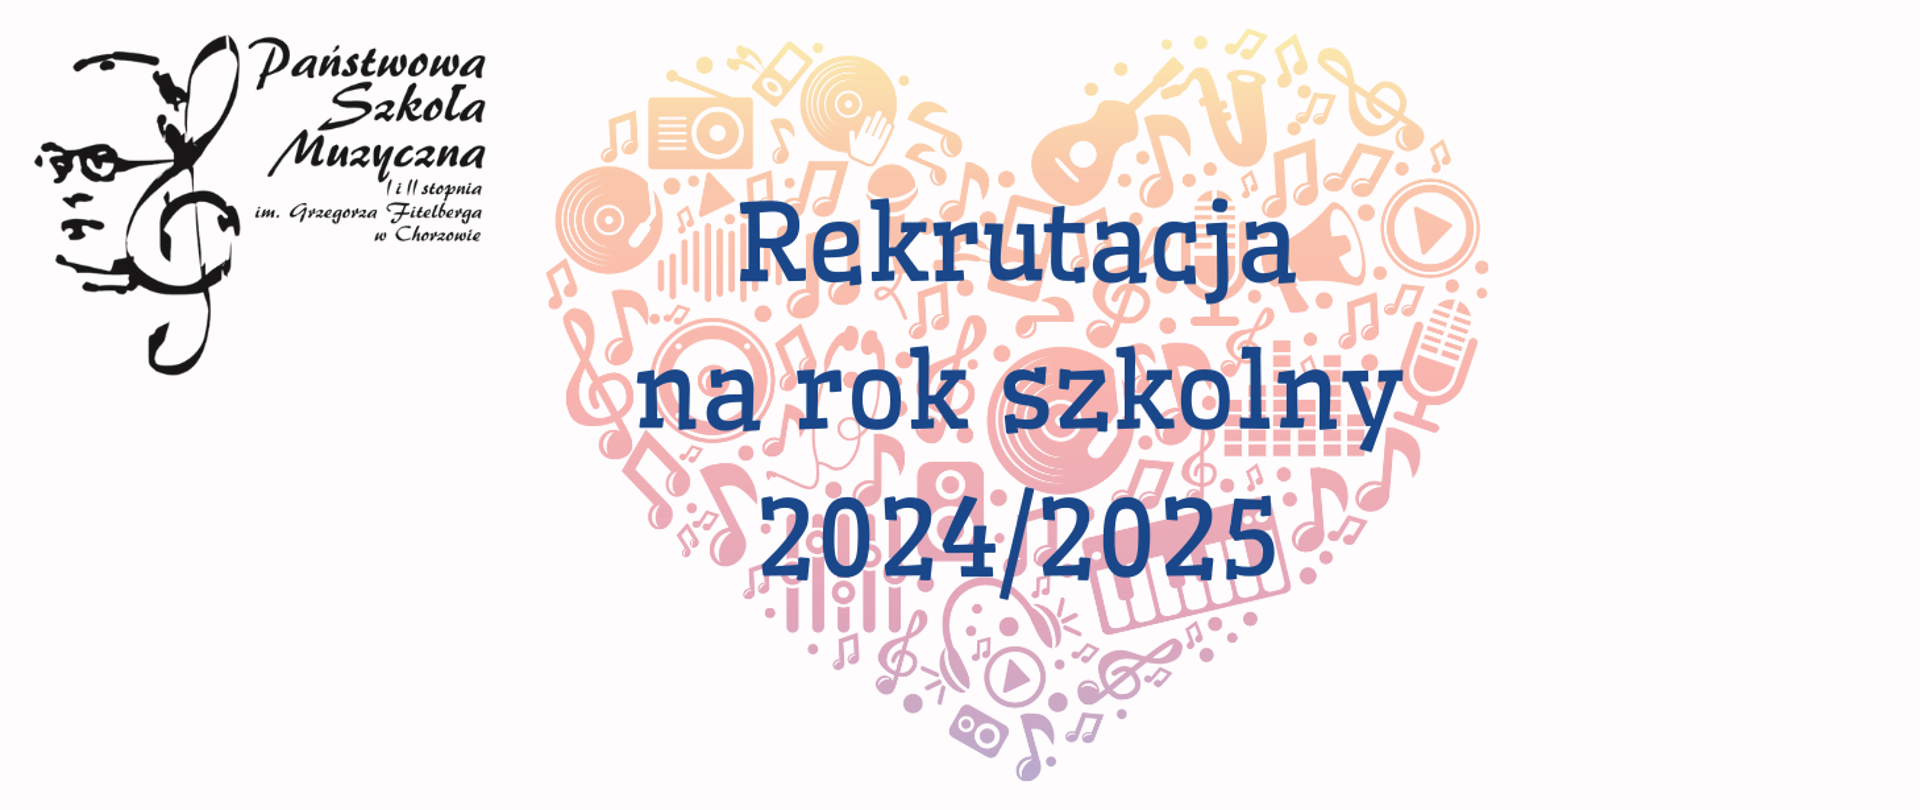 z lewej logo szkoły po środku napis Rekrutacja na rok szkolny 2024/2025 w tle instrumenty ułożone w kształt serca